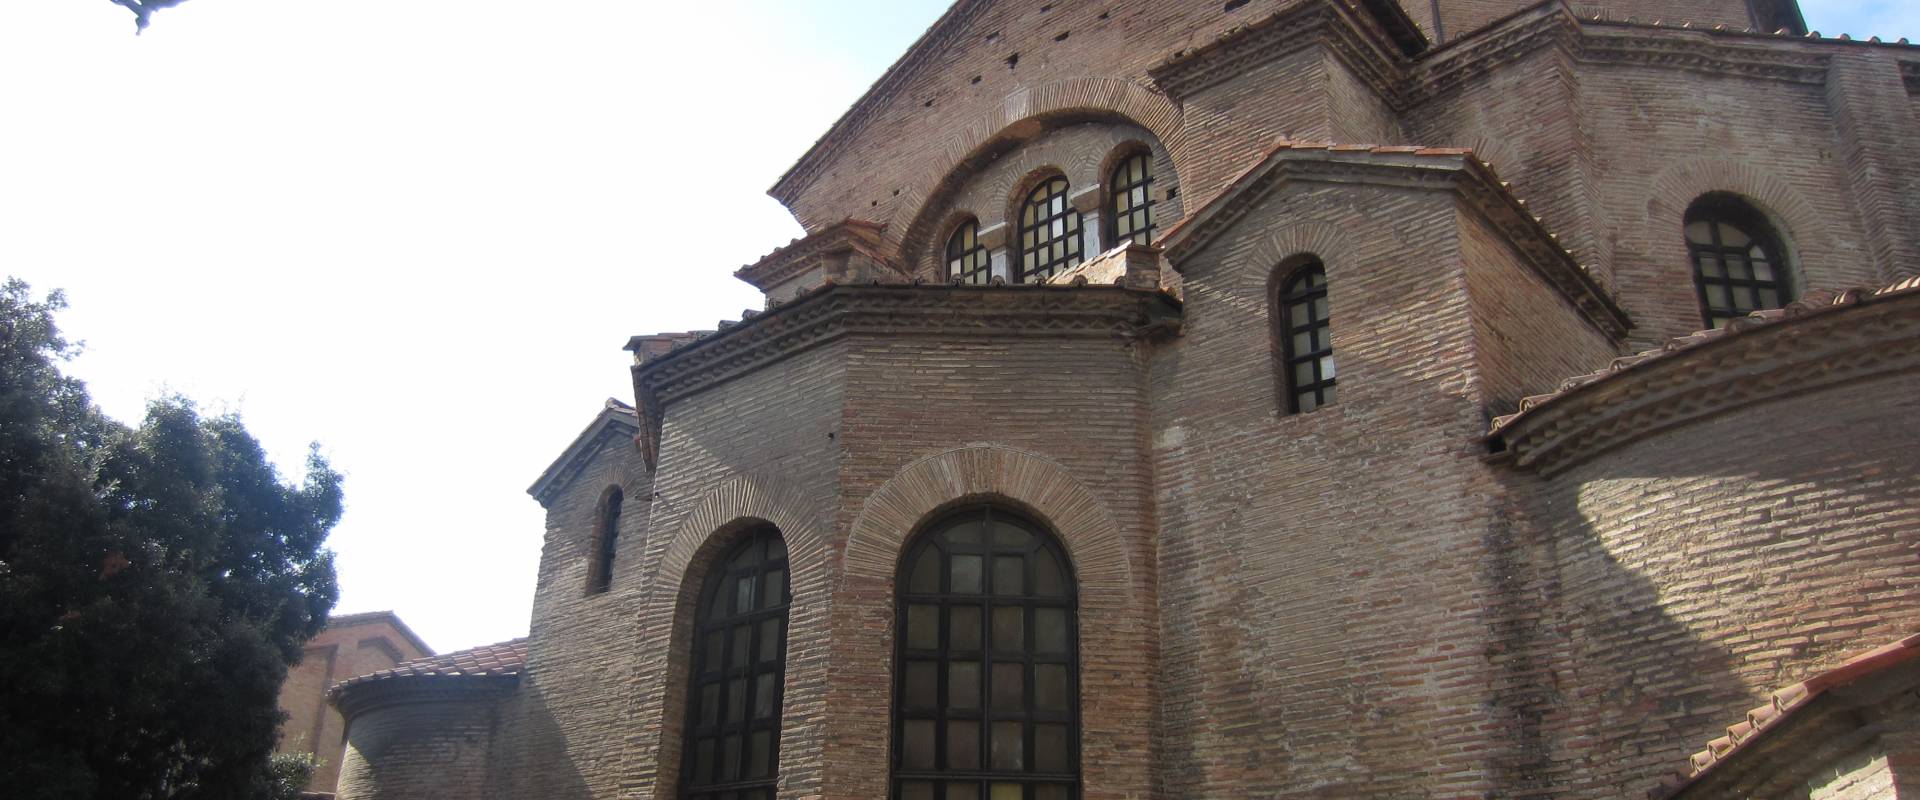 Basilica di San Vitale - dettaglio esterno foto di Ebe94